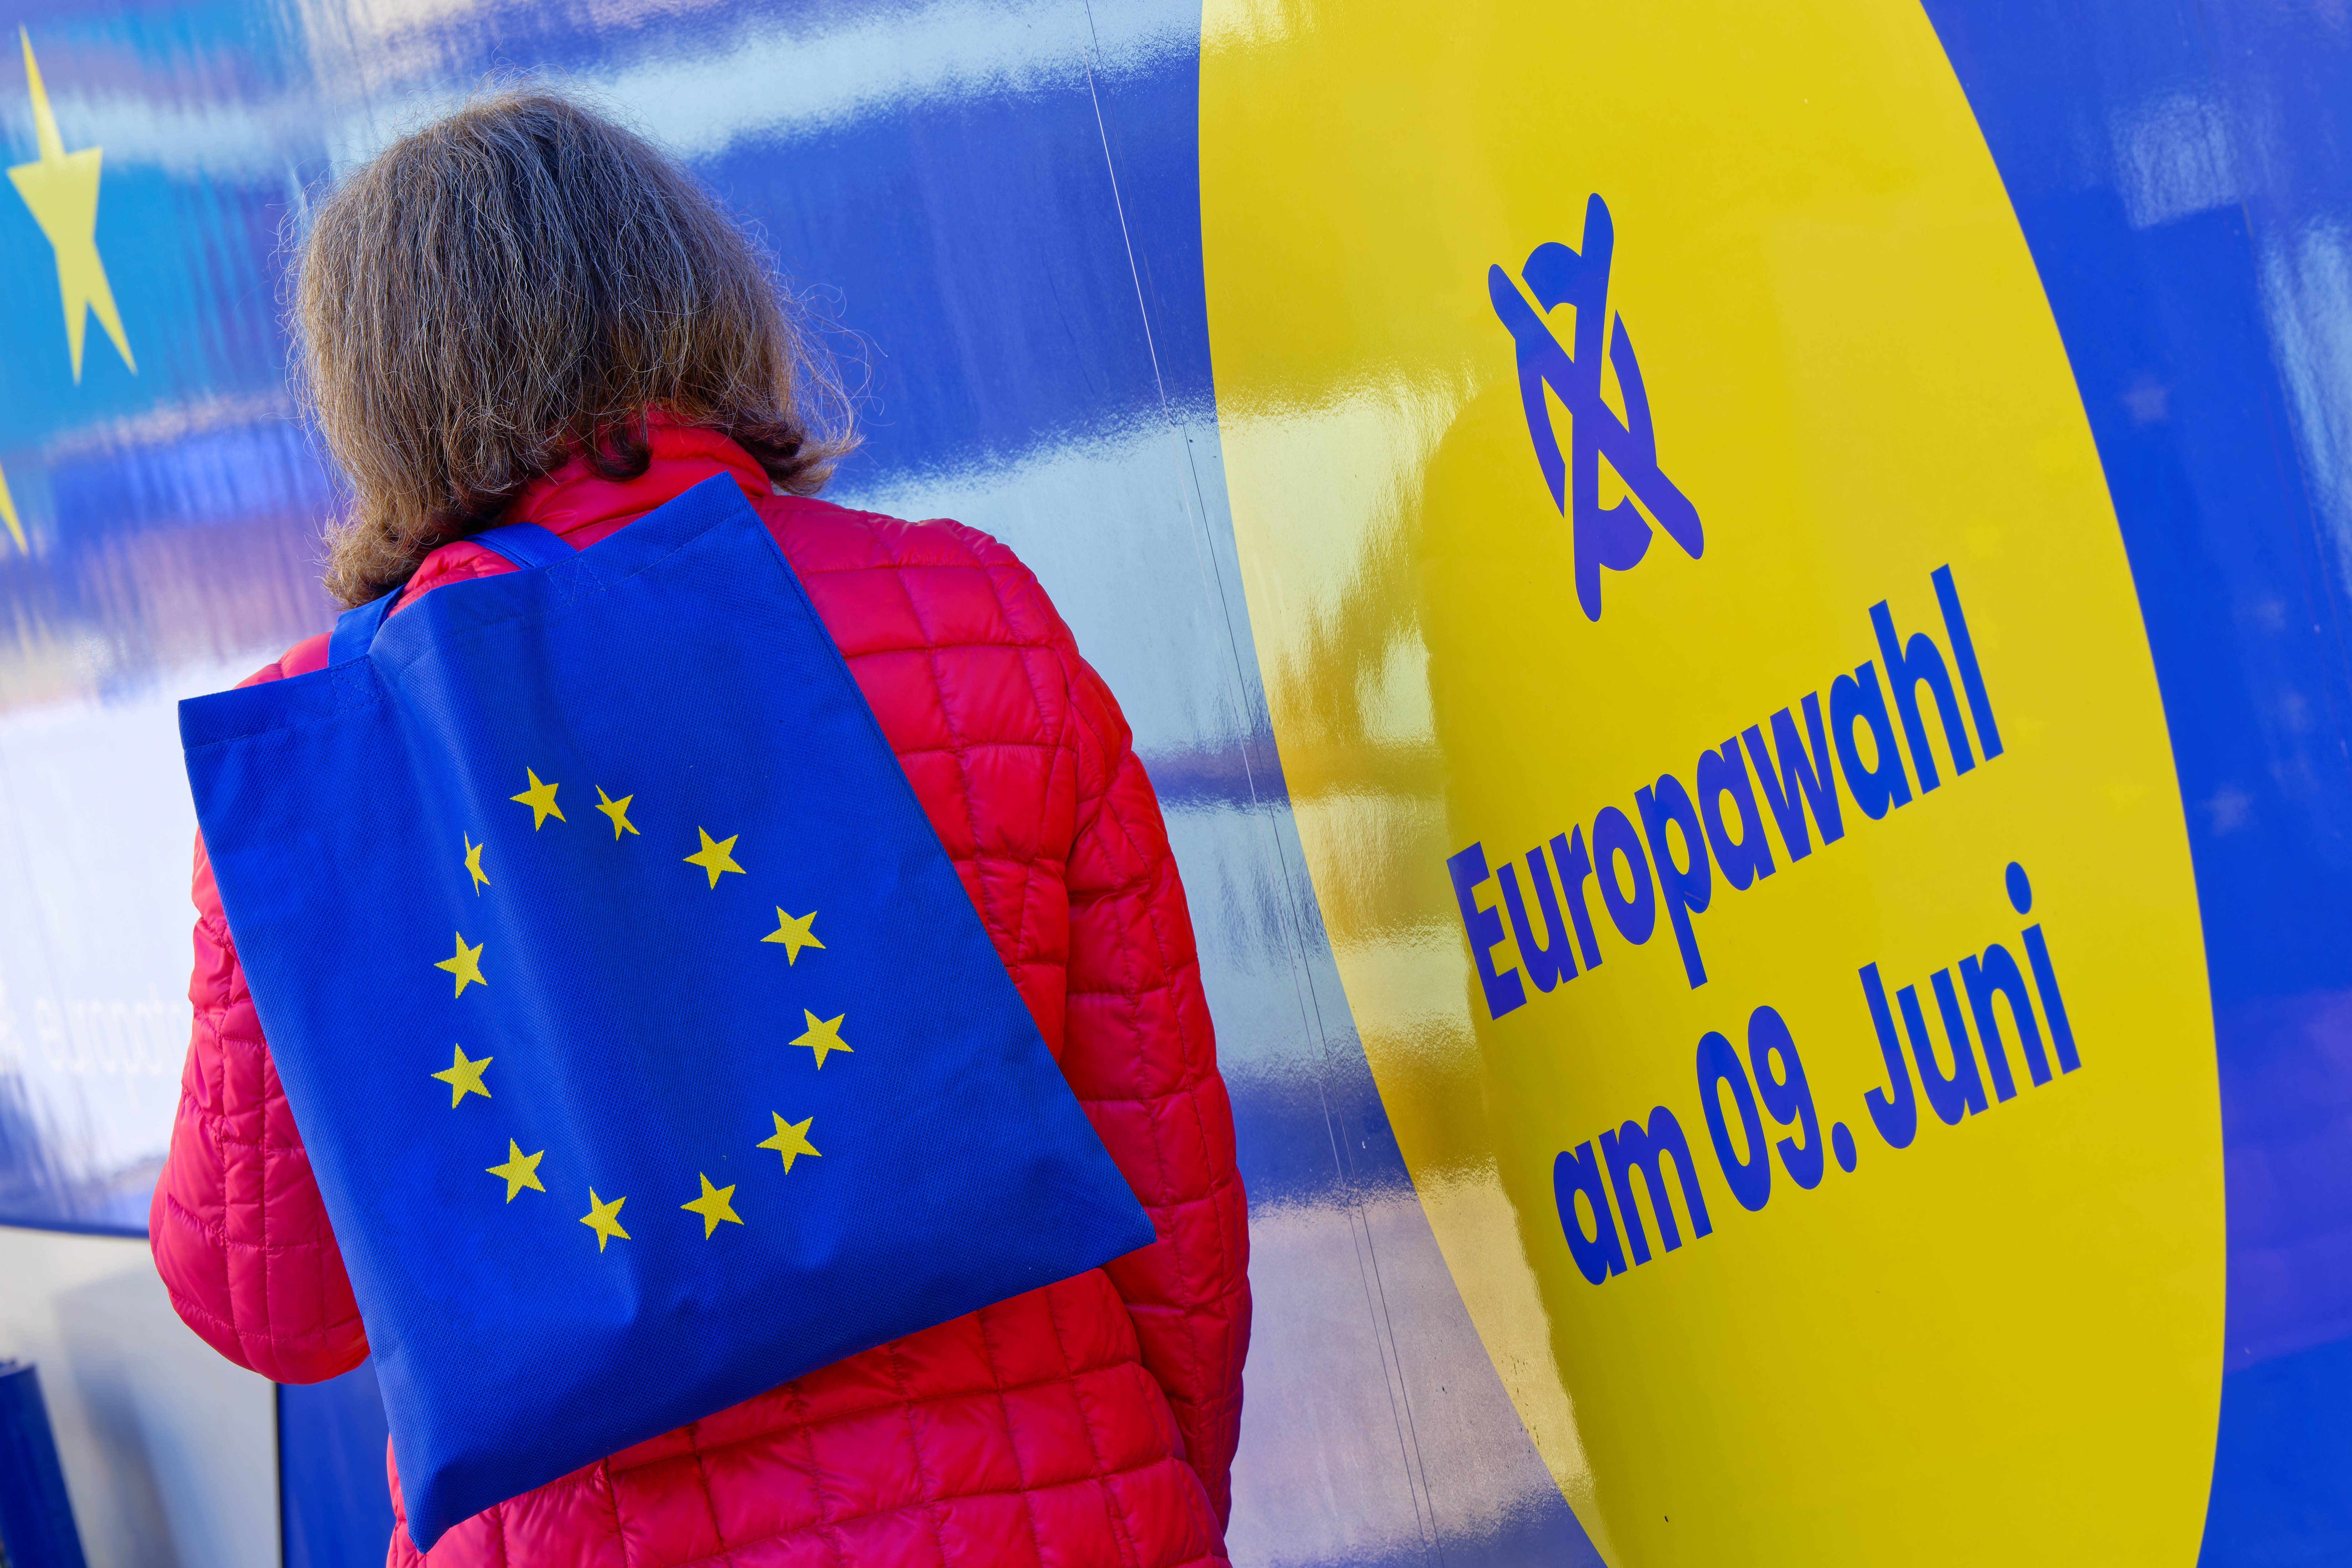 Eine Frau mit einer Tasche, die als Aufdruck die Flagge der Europäischen Union hat, steht vor einem blau-gelben Plakat mit der Aufschrift "Euriopawahl am 9. Juni". 